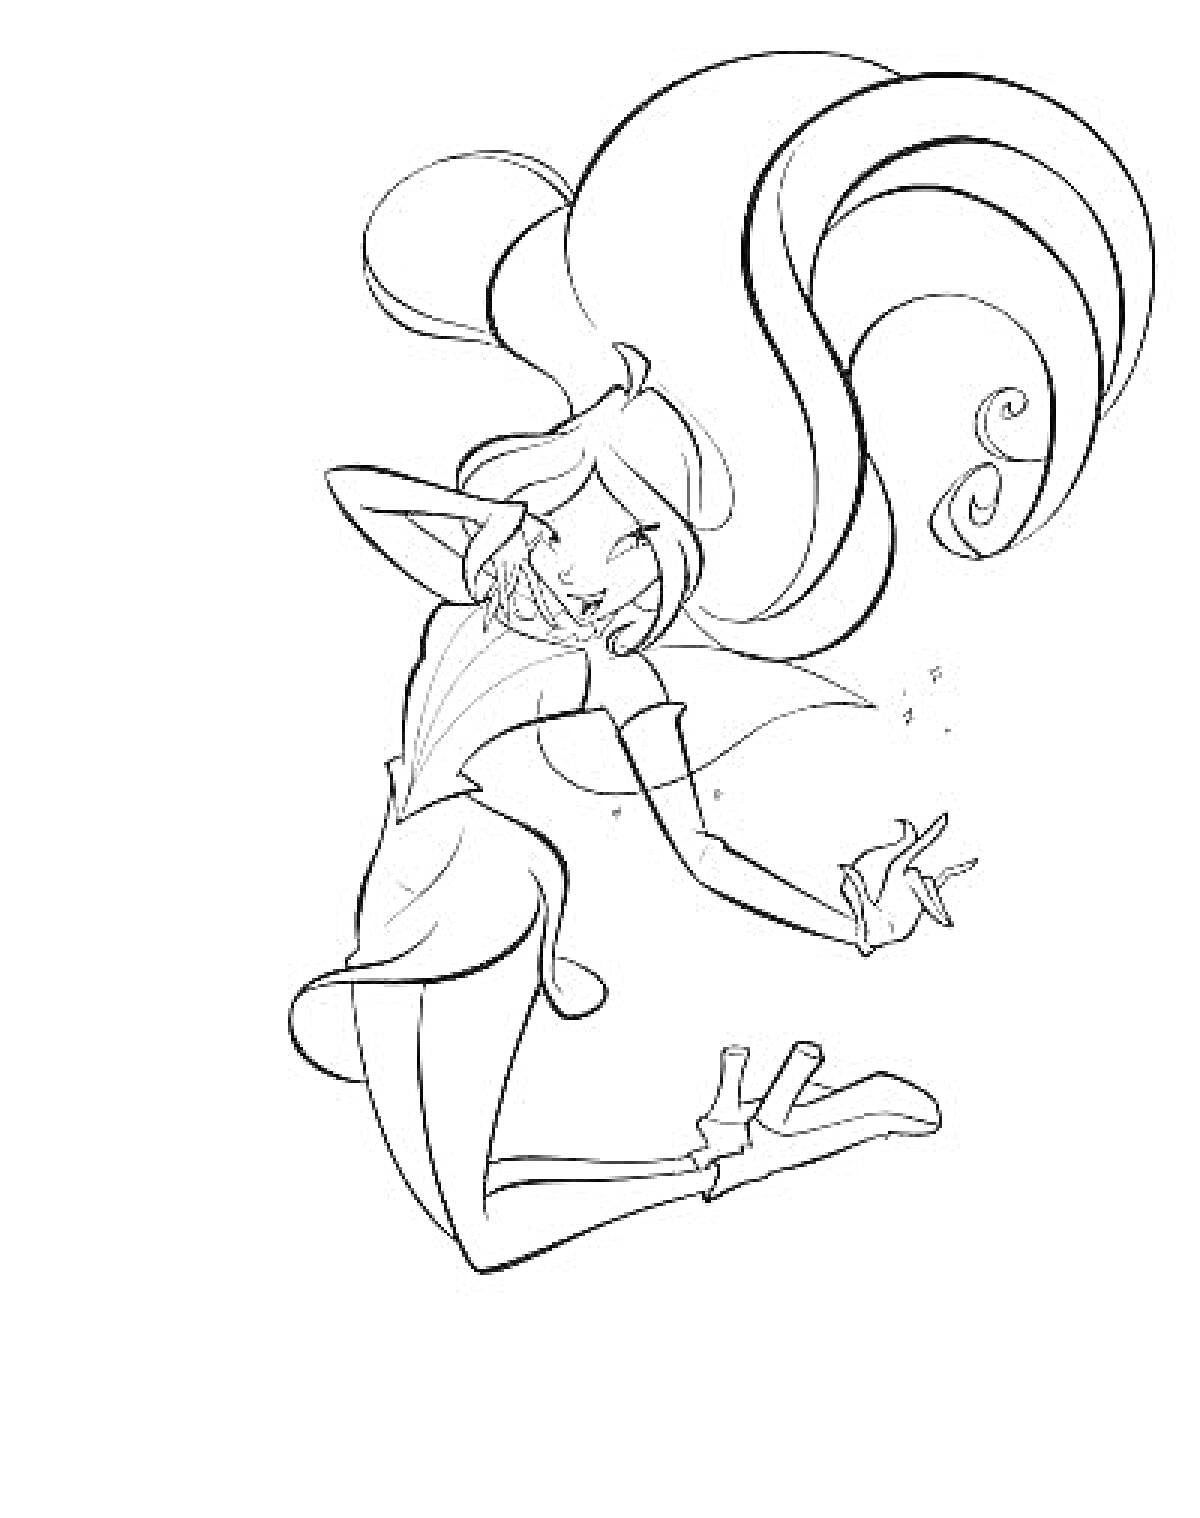 Раскраска Винкс Флора с длинными волосами в платье и ботинках, прыгающая и касающаяся звездочек